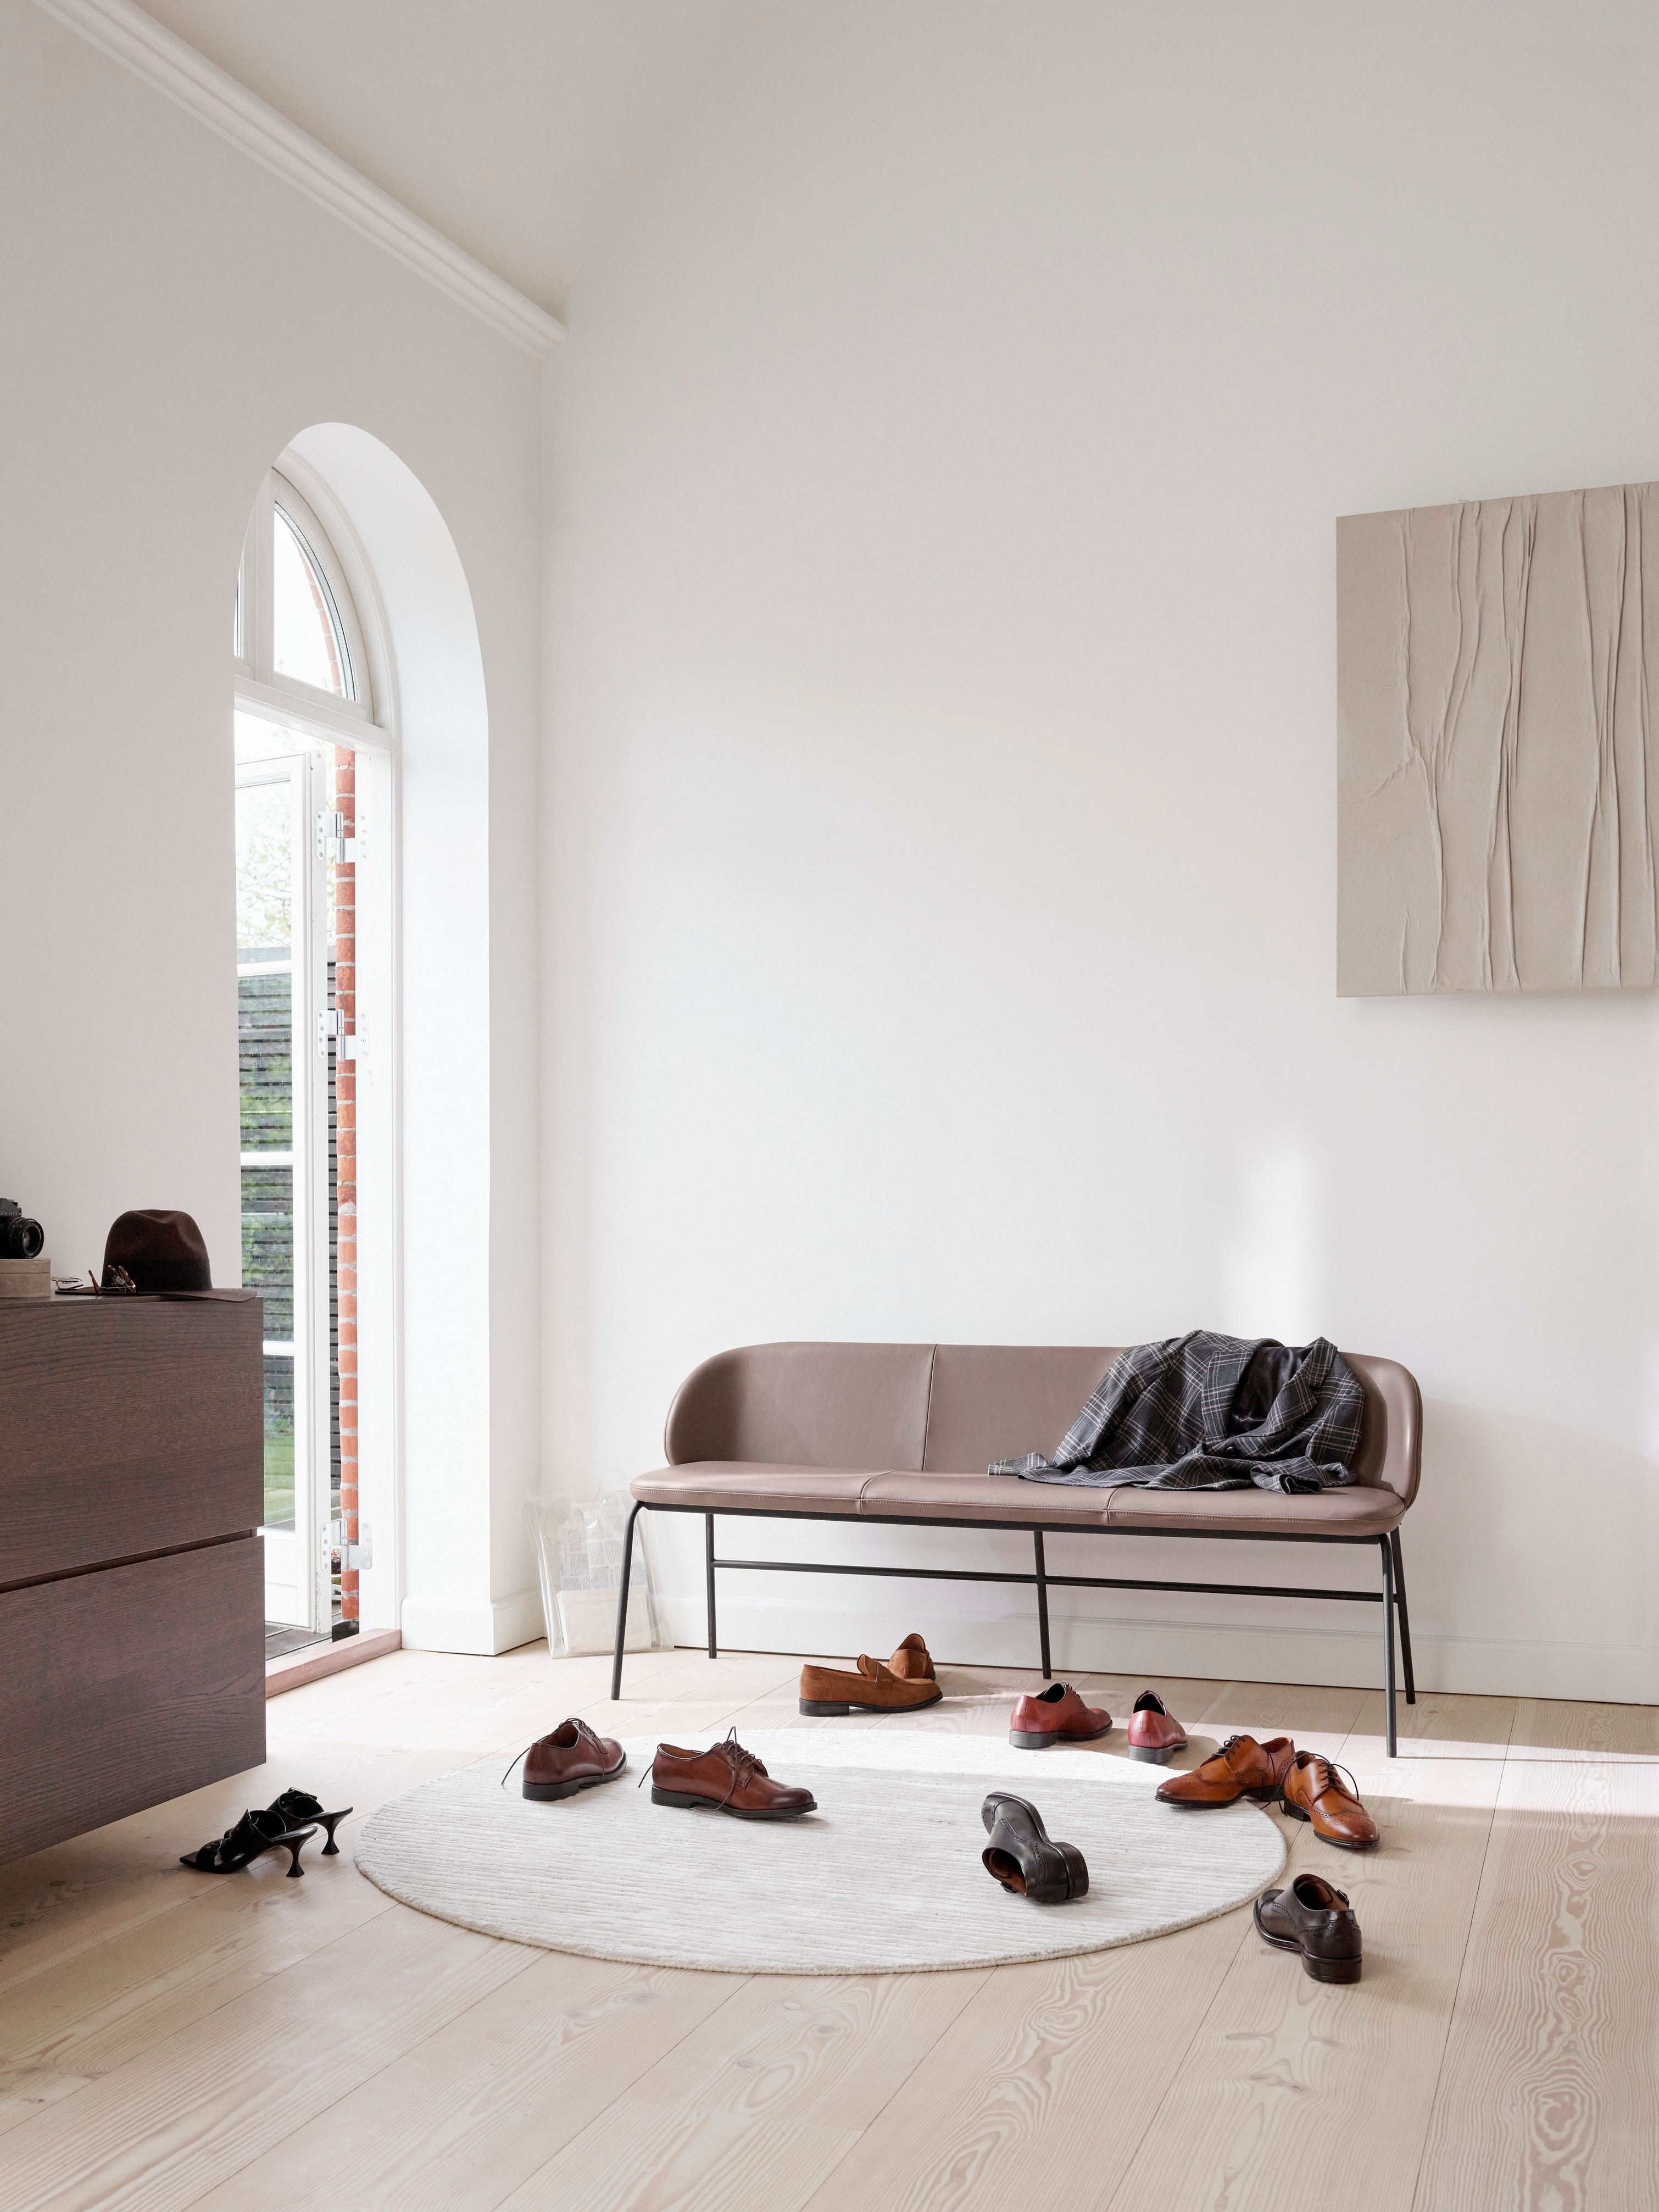 Lederbank in einem hellen Raum mit Rundbogenfenster, Schuhen auf dem Boden und Holzkunst.